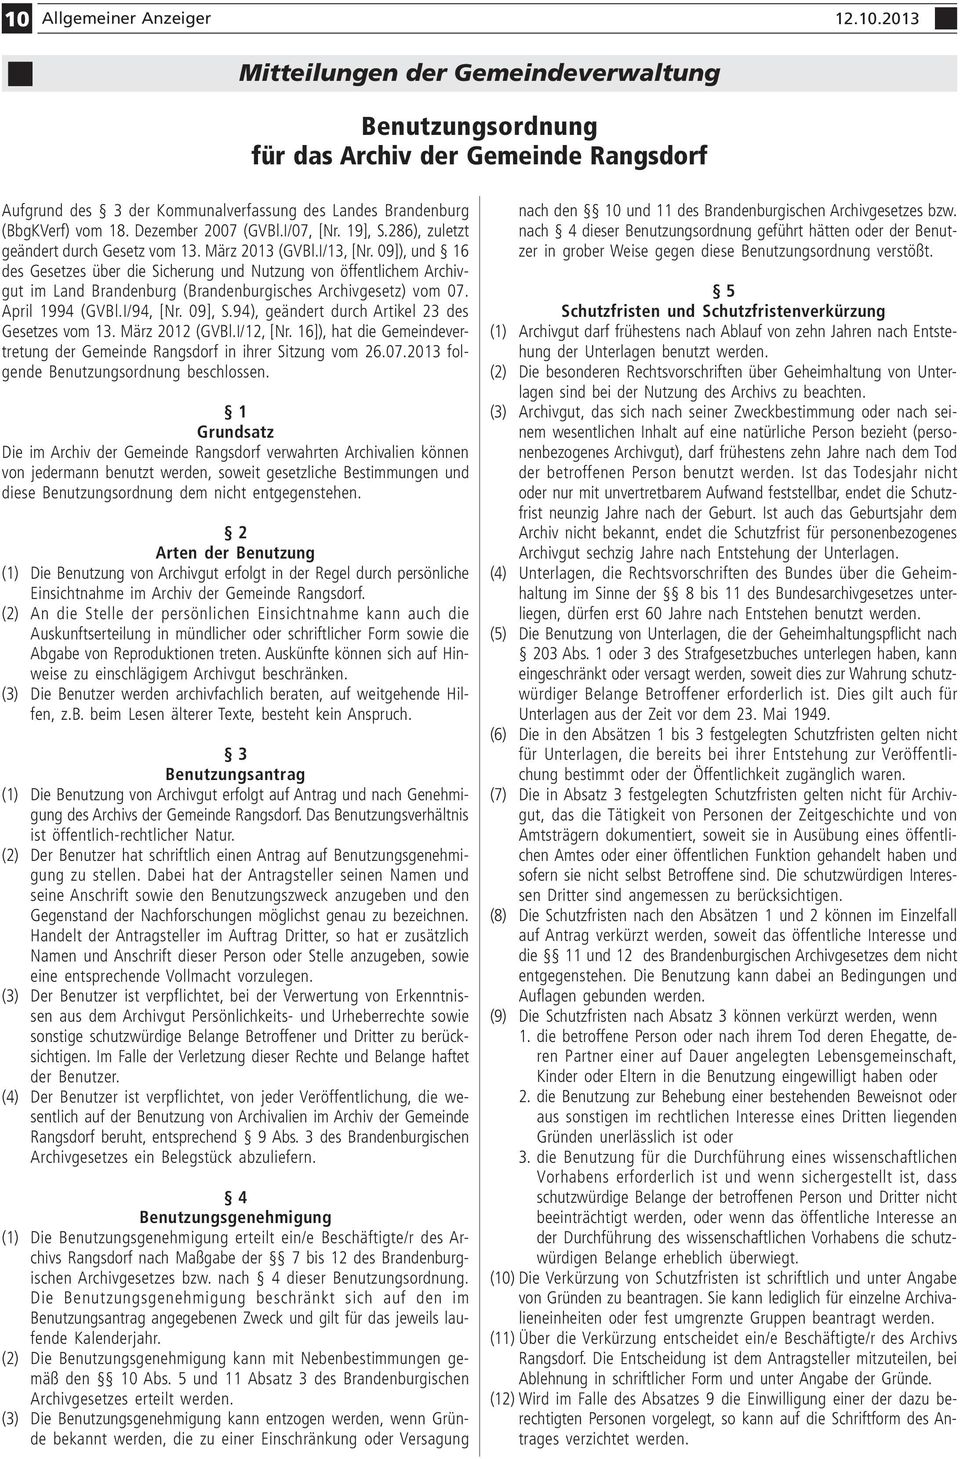 09]), und 16 des Gesetzes über die Sicherung und Nutzung von öffentlichem Archivgut im Land Brandenburg (Brandenburgisches Archivgesetz) vom 07. April 1994 (GVBl.I/94, [Nr. 09], S.